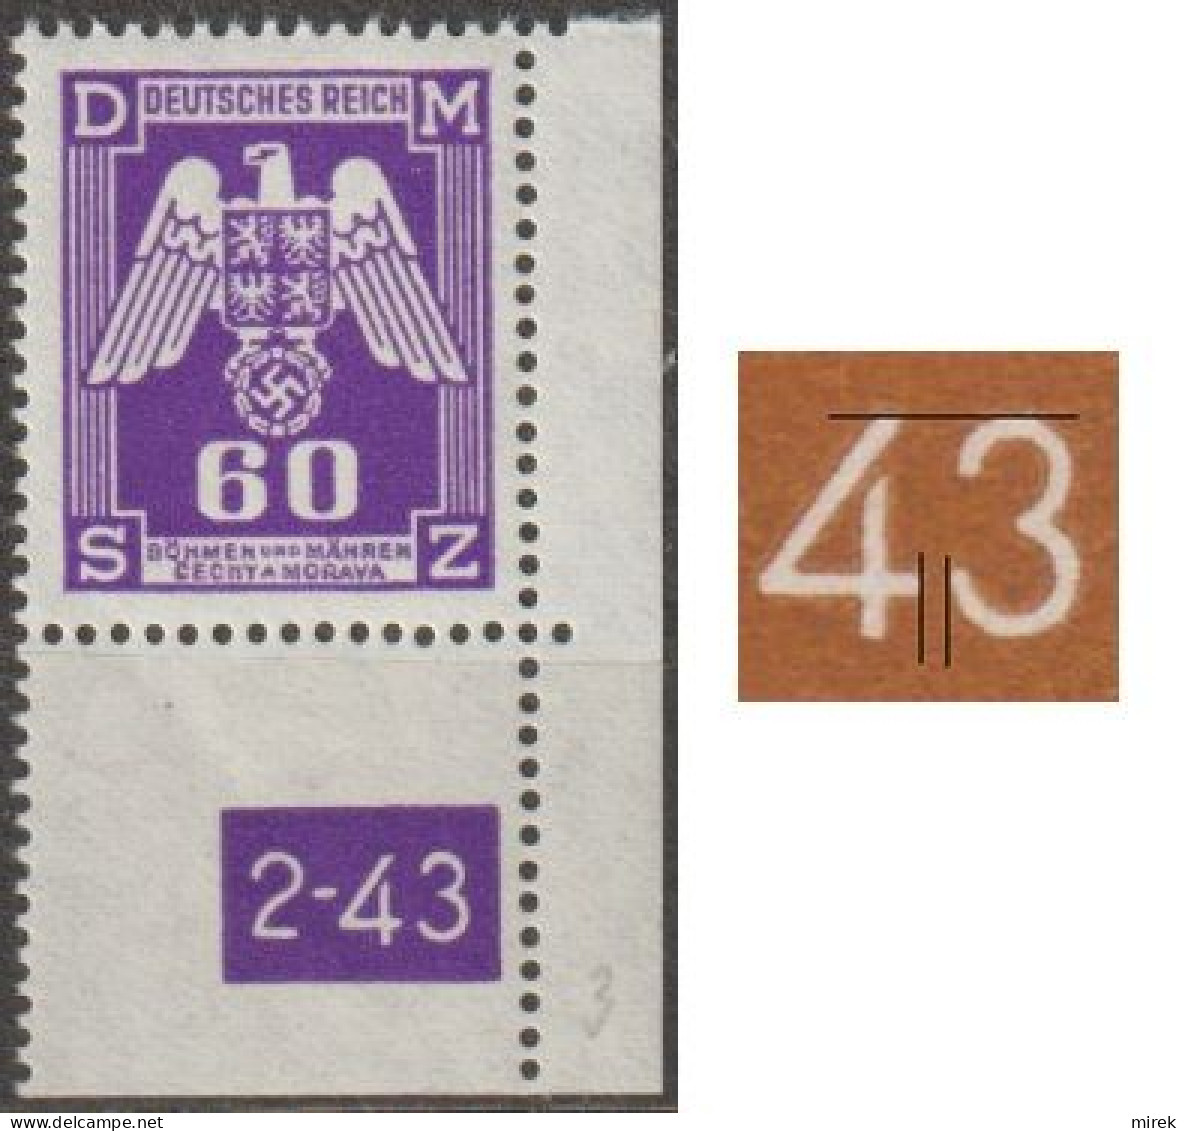 016a/ Pof. SL 16, Corner Stamp, Plate Number 2-43, Type 1, Var. 3 - Ungebraucht